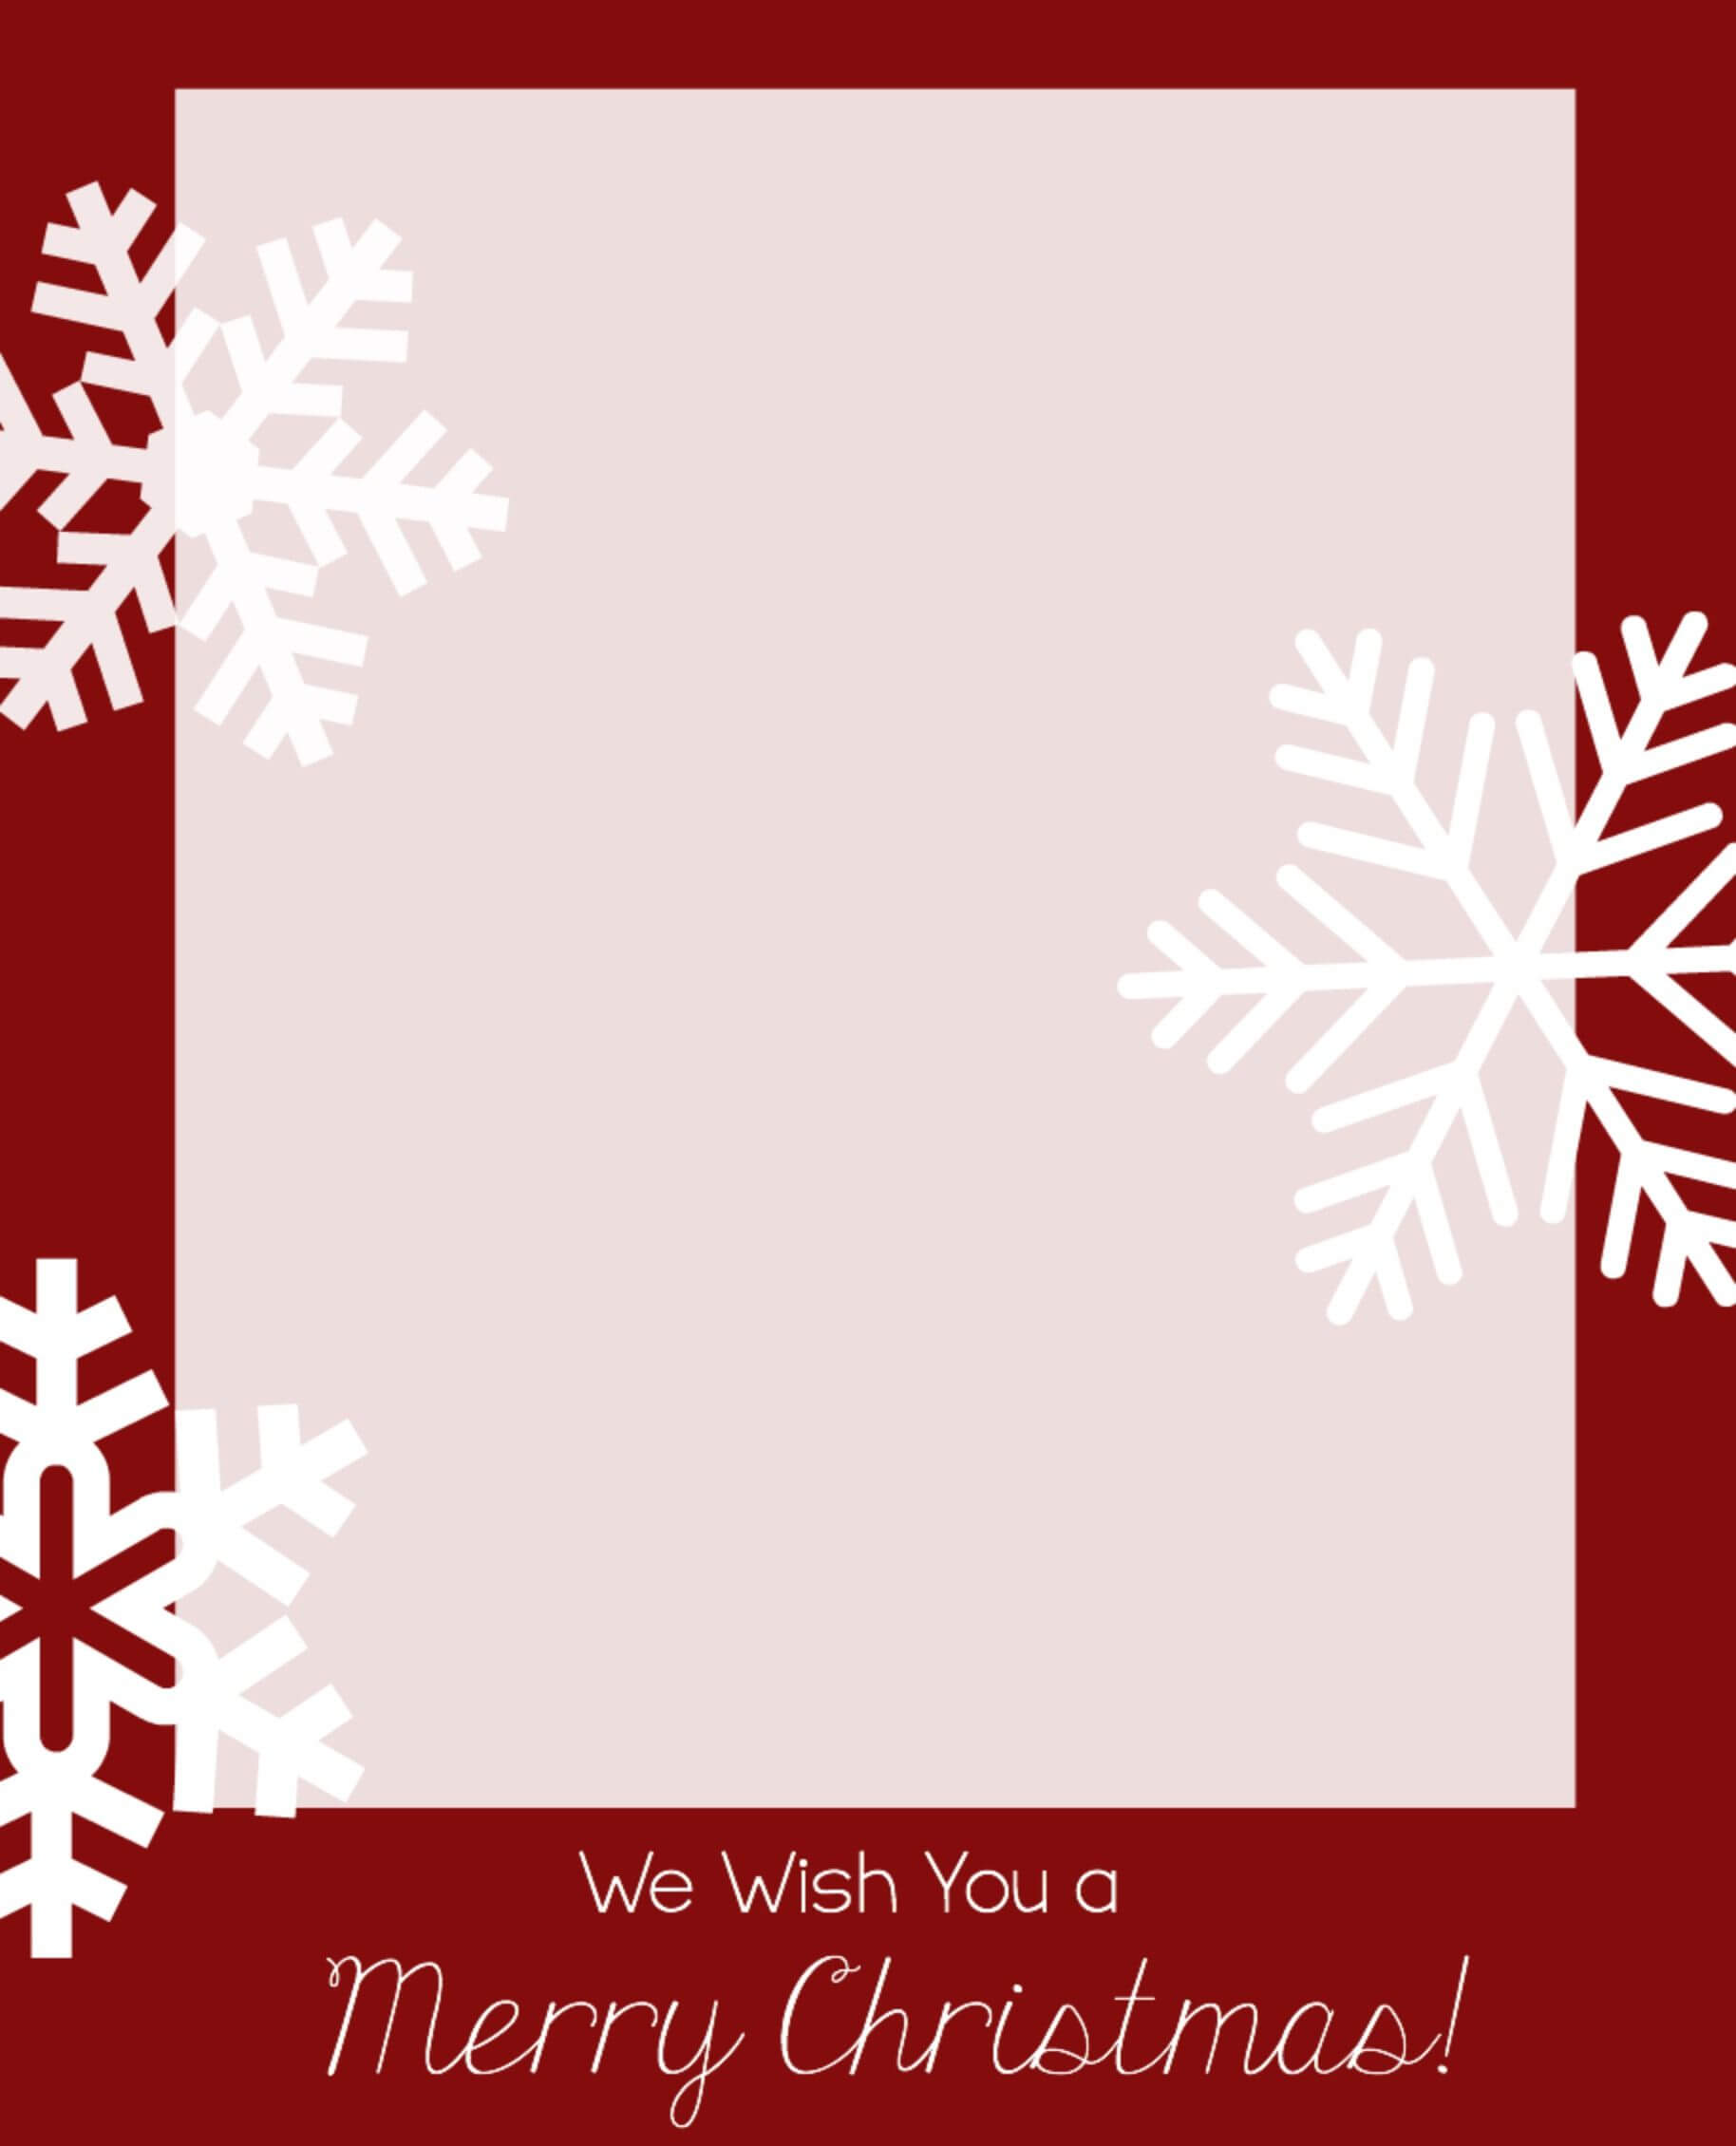 Free Christmas Card Templates | Christmas Photo Card Regarding Diy Christmas Card Templates